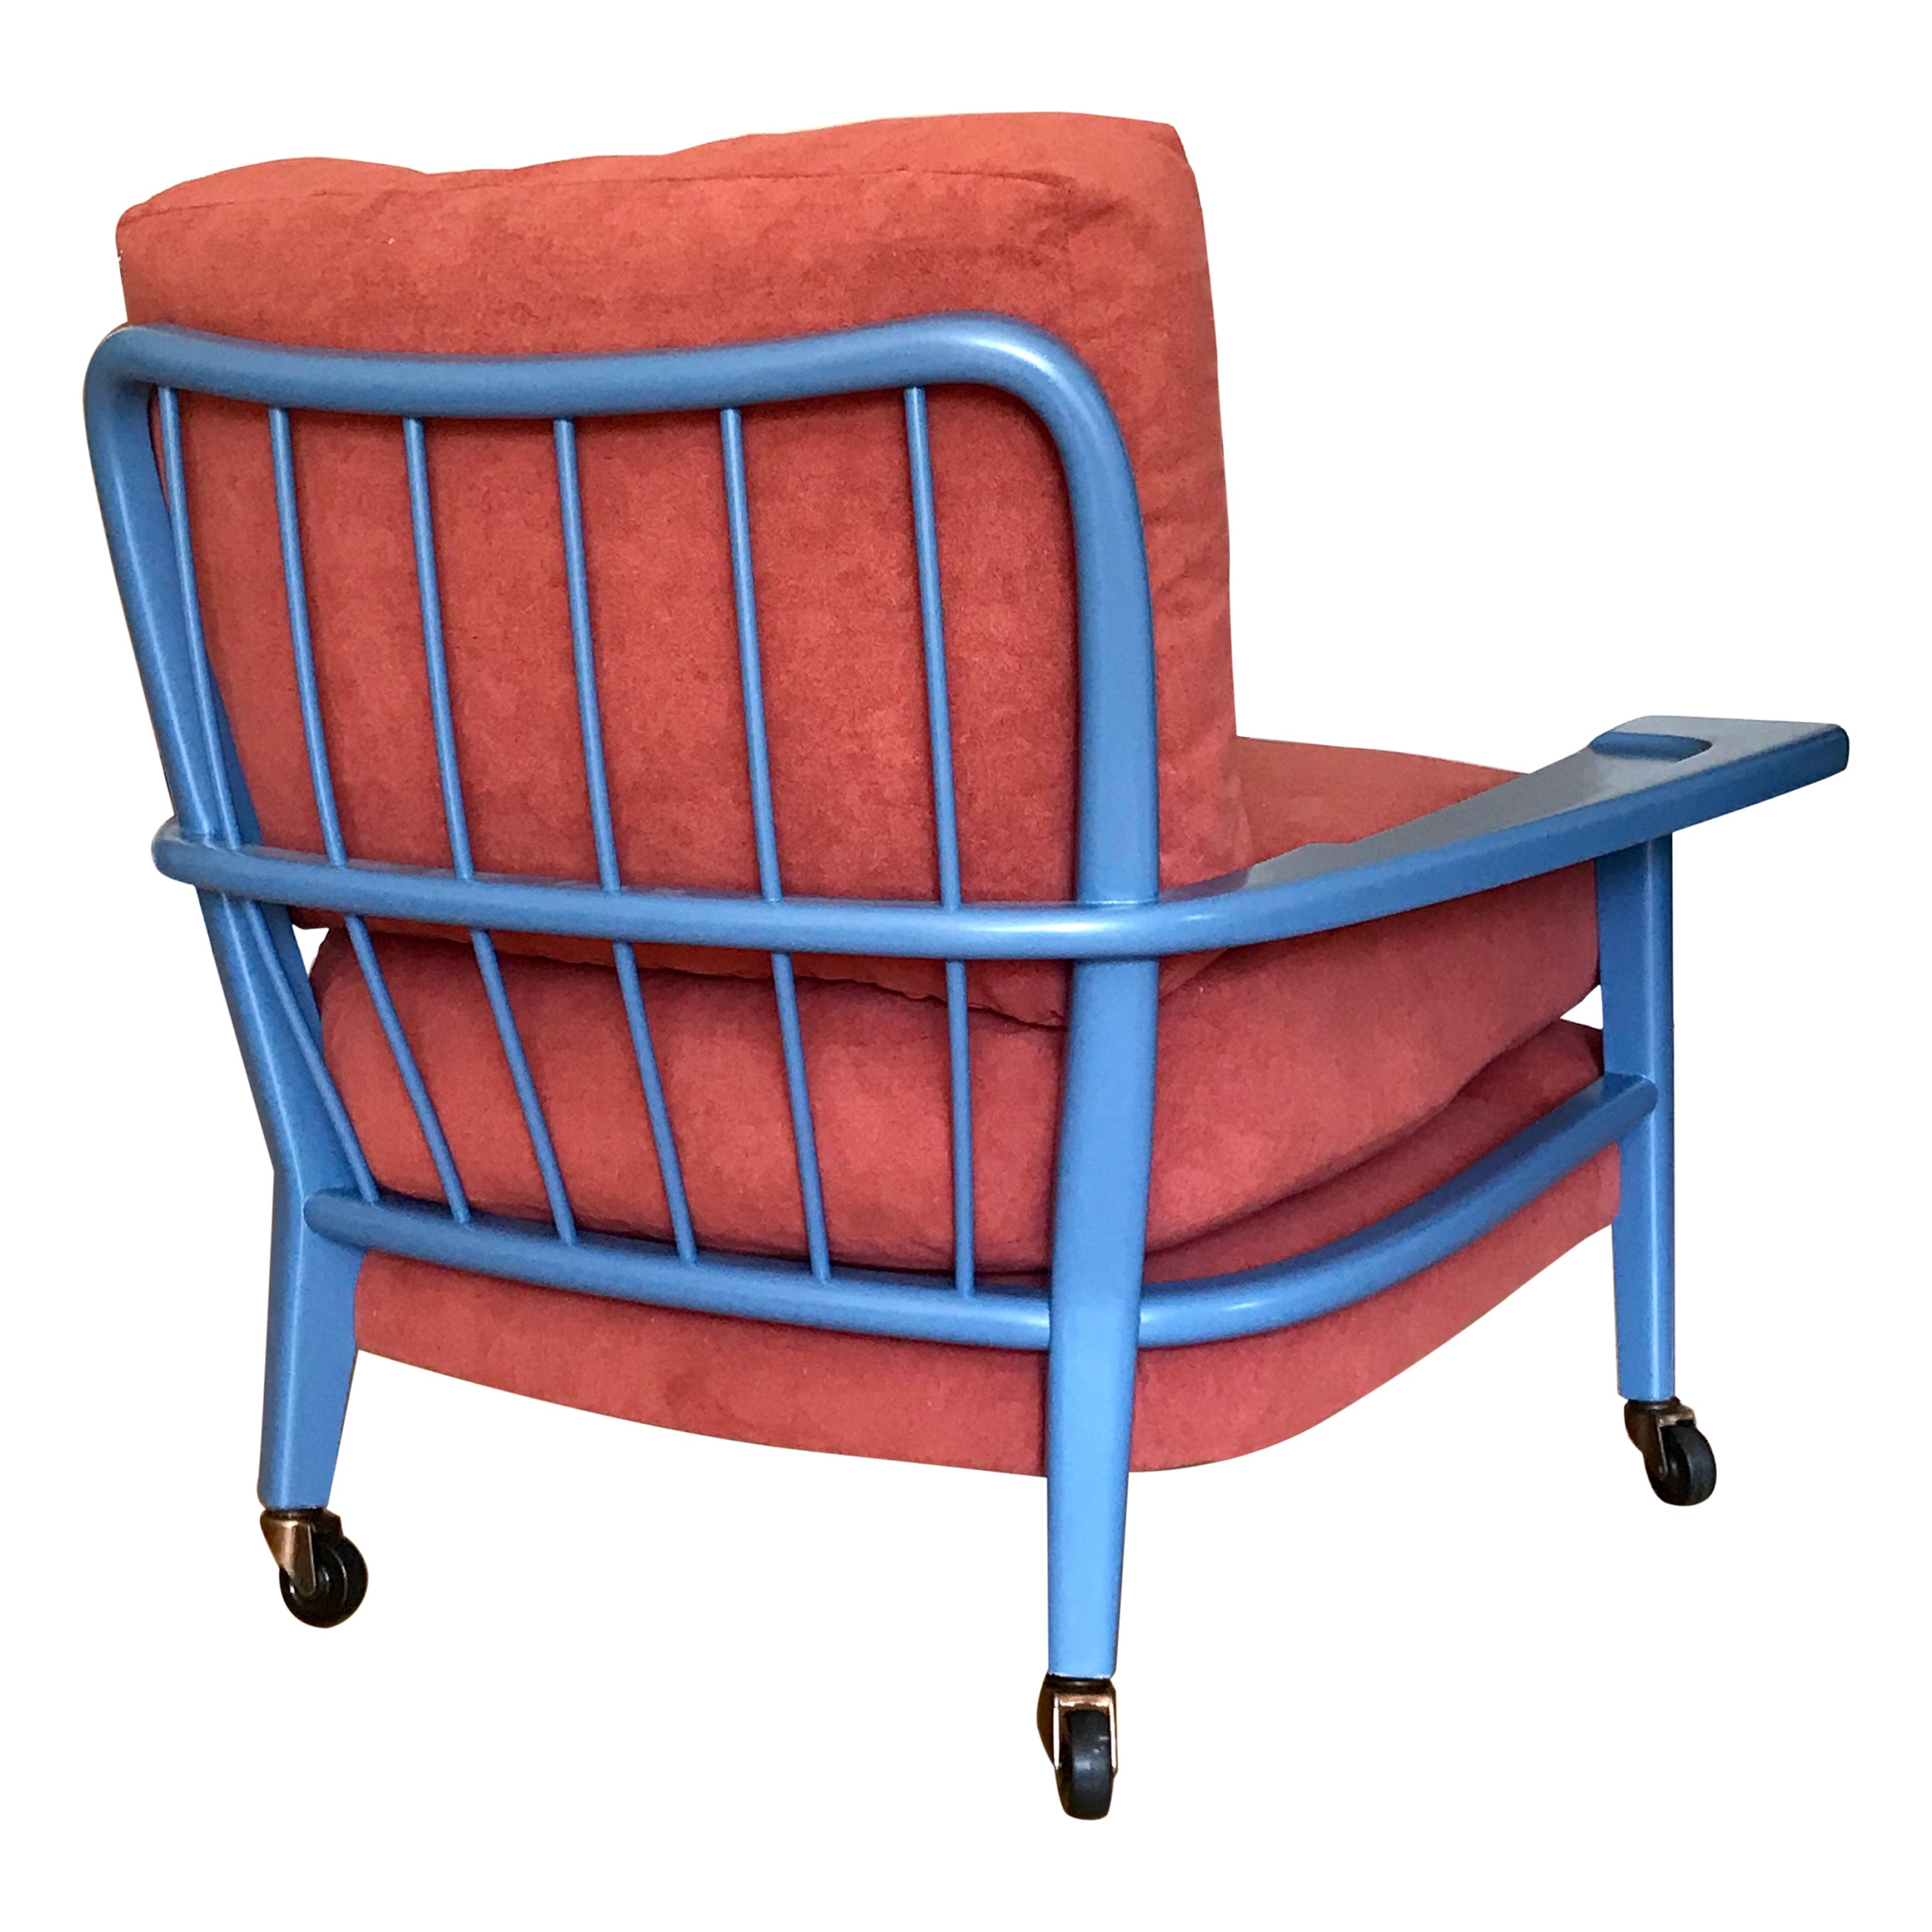 Paul Laszlo "Paddle Arm" Lounge Chair